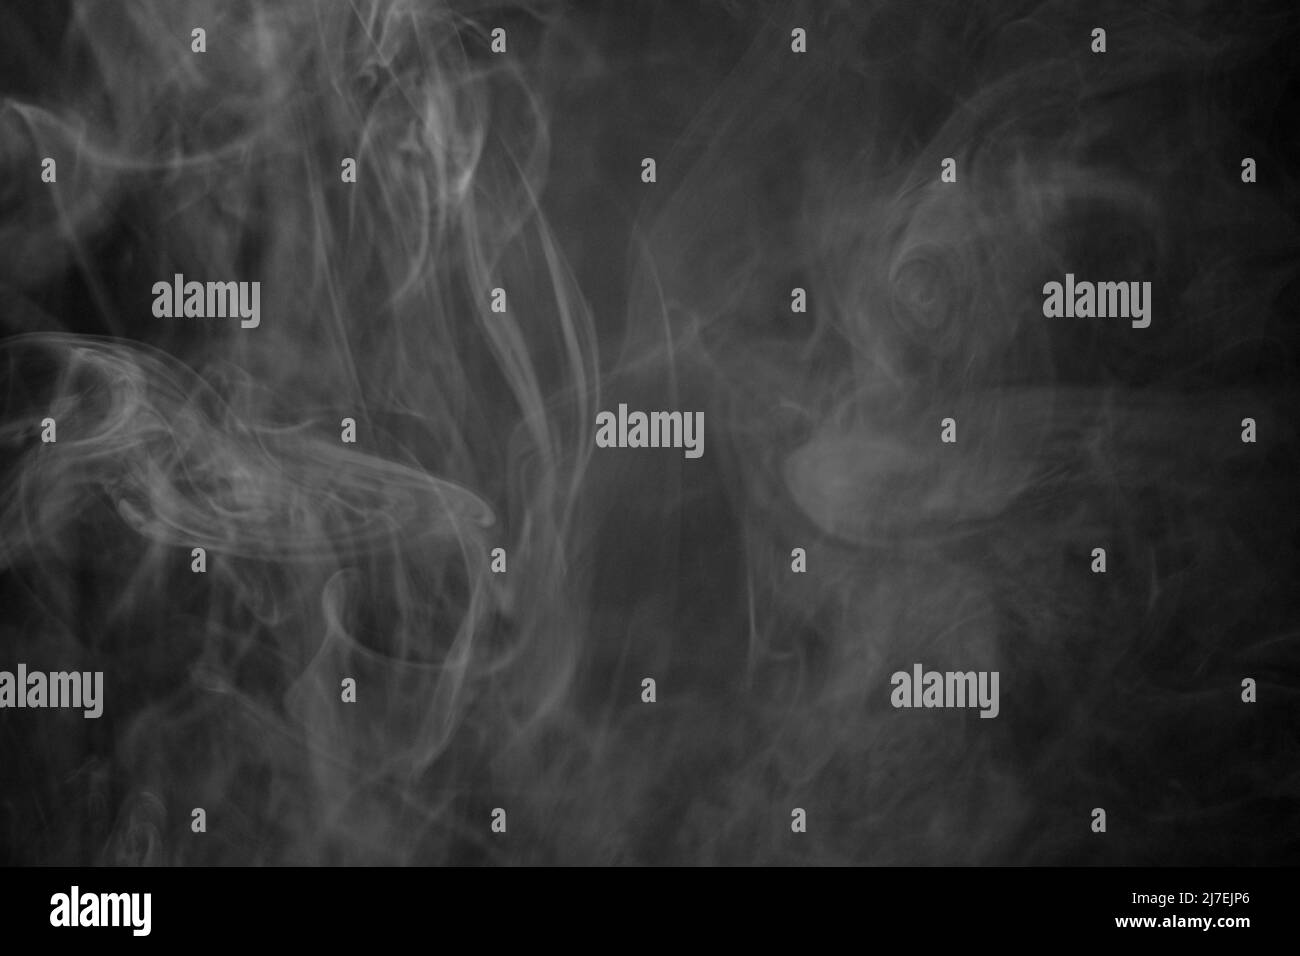 Una foto in bianco e nero di una nuvola di fumo contro uno sfondo nero, la foto potrebbe essere utilizzata come sfondo, trama di fumo o astratto - Fotografia di stock Foto Stock